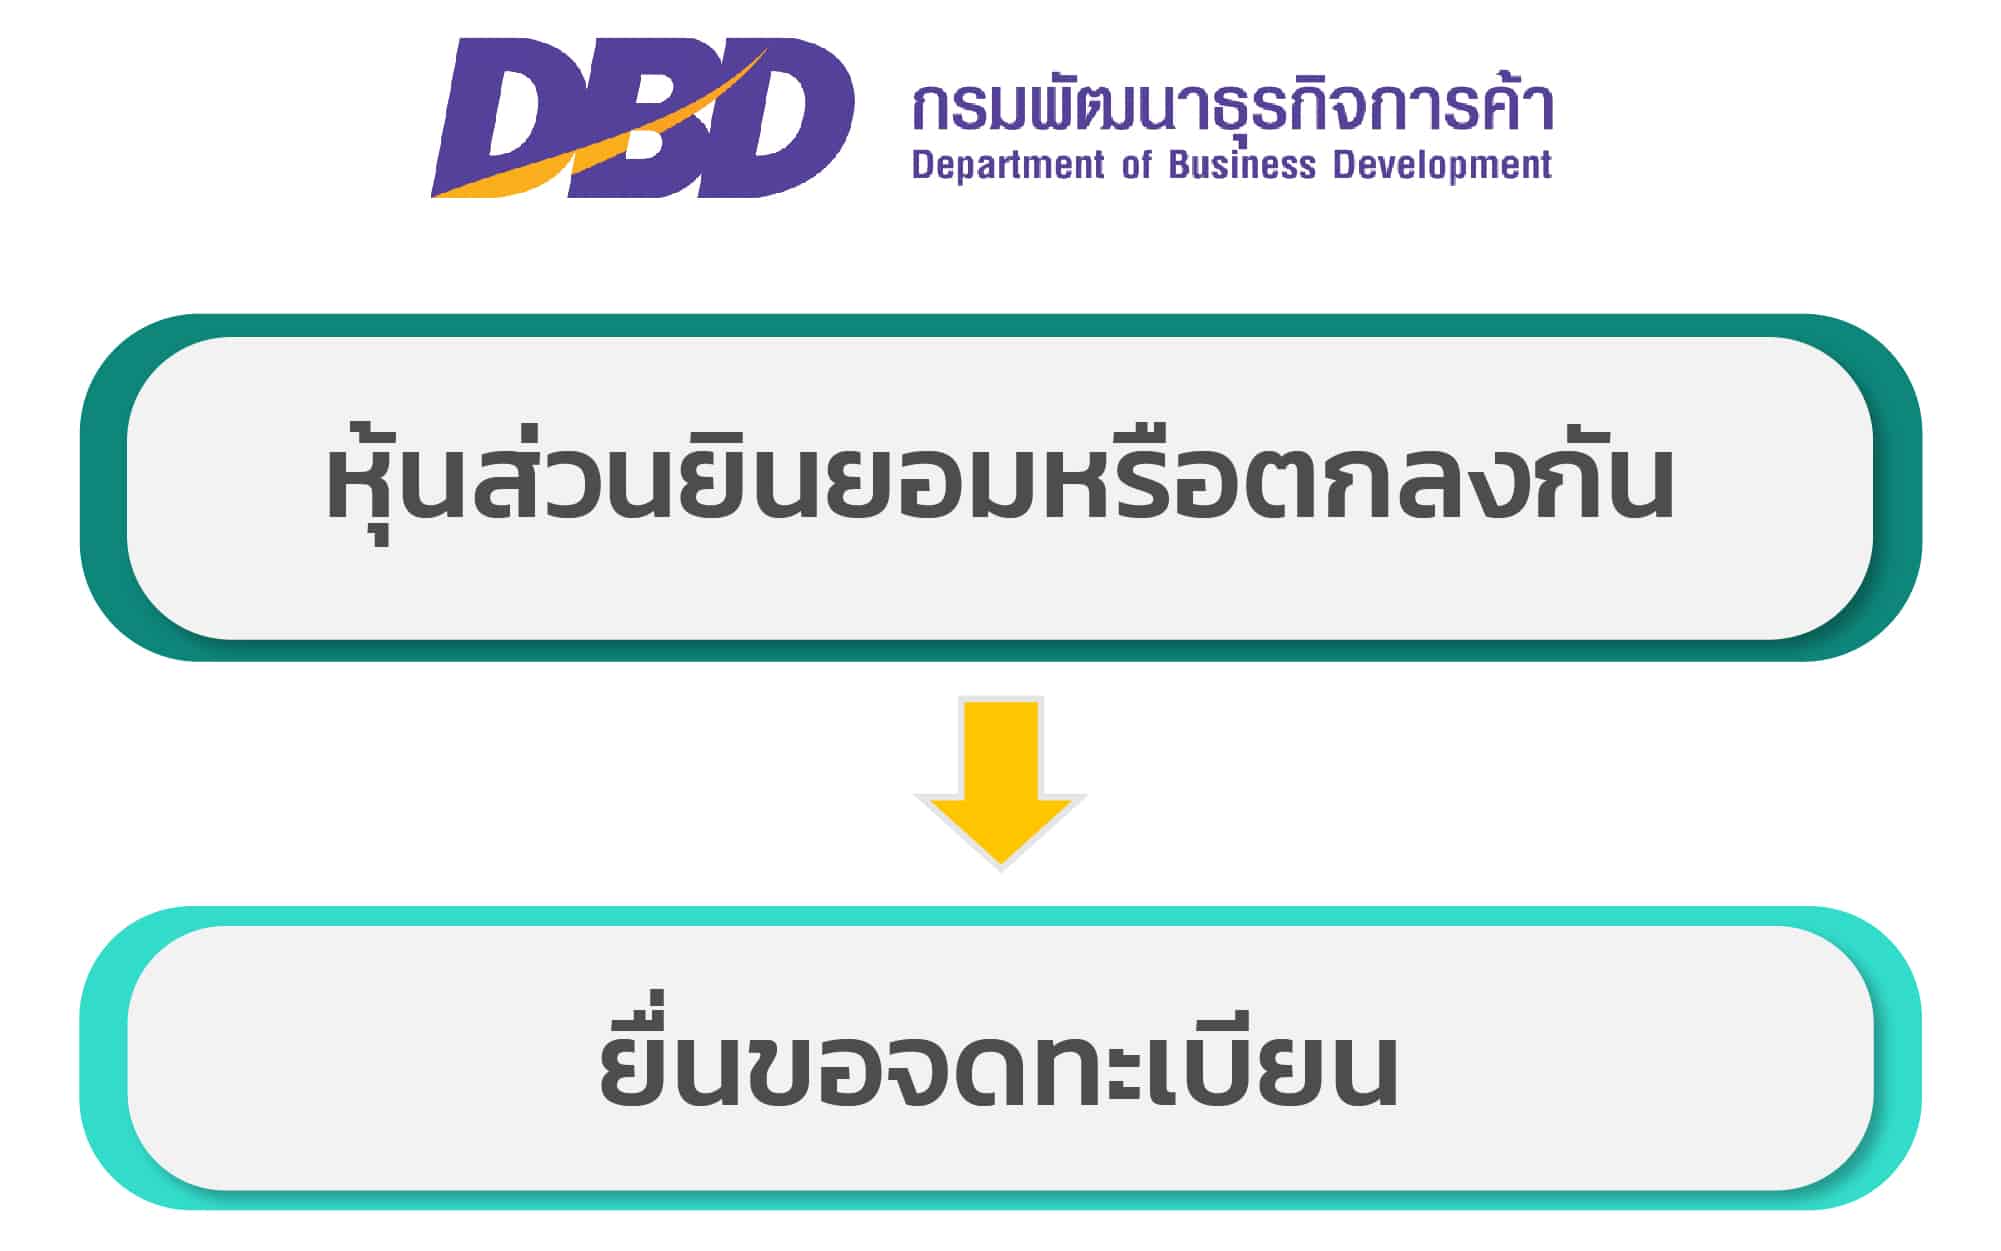 เพิ่มทุนจดทะเบียนห้างหุ้นส่วนจำกัด | Best Promotion สำหรับ 10 คนแรกของเดือน  | Thai Tax Law